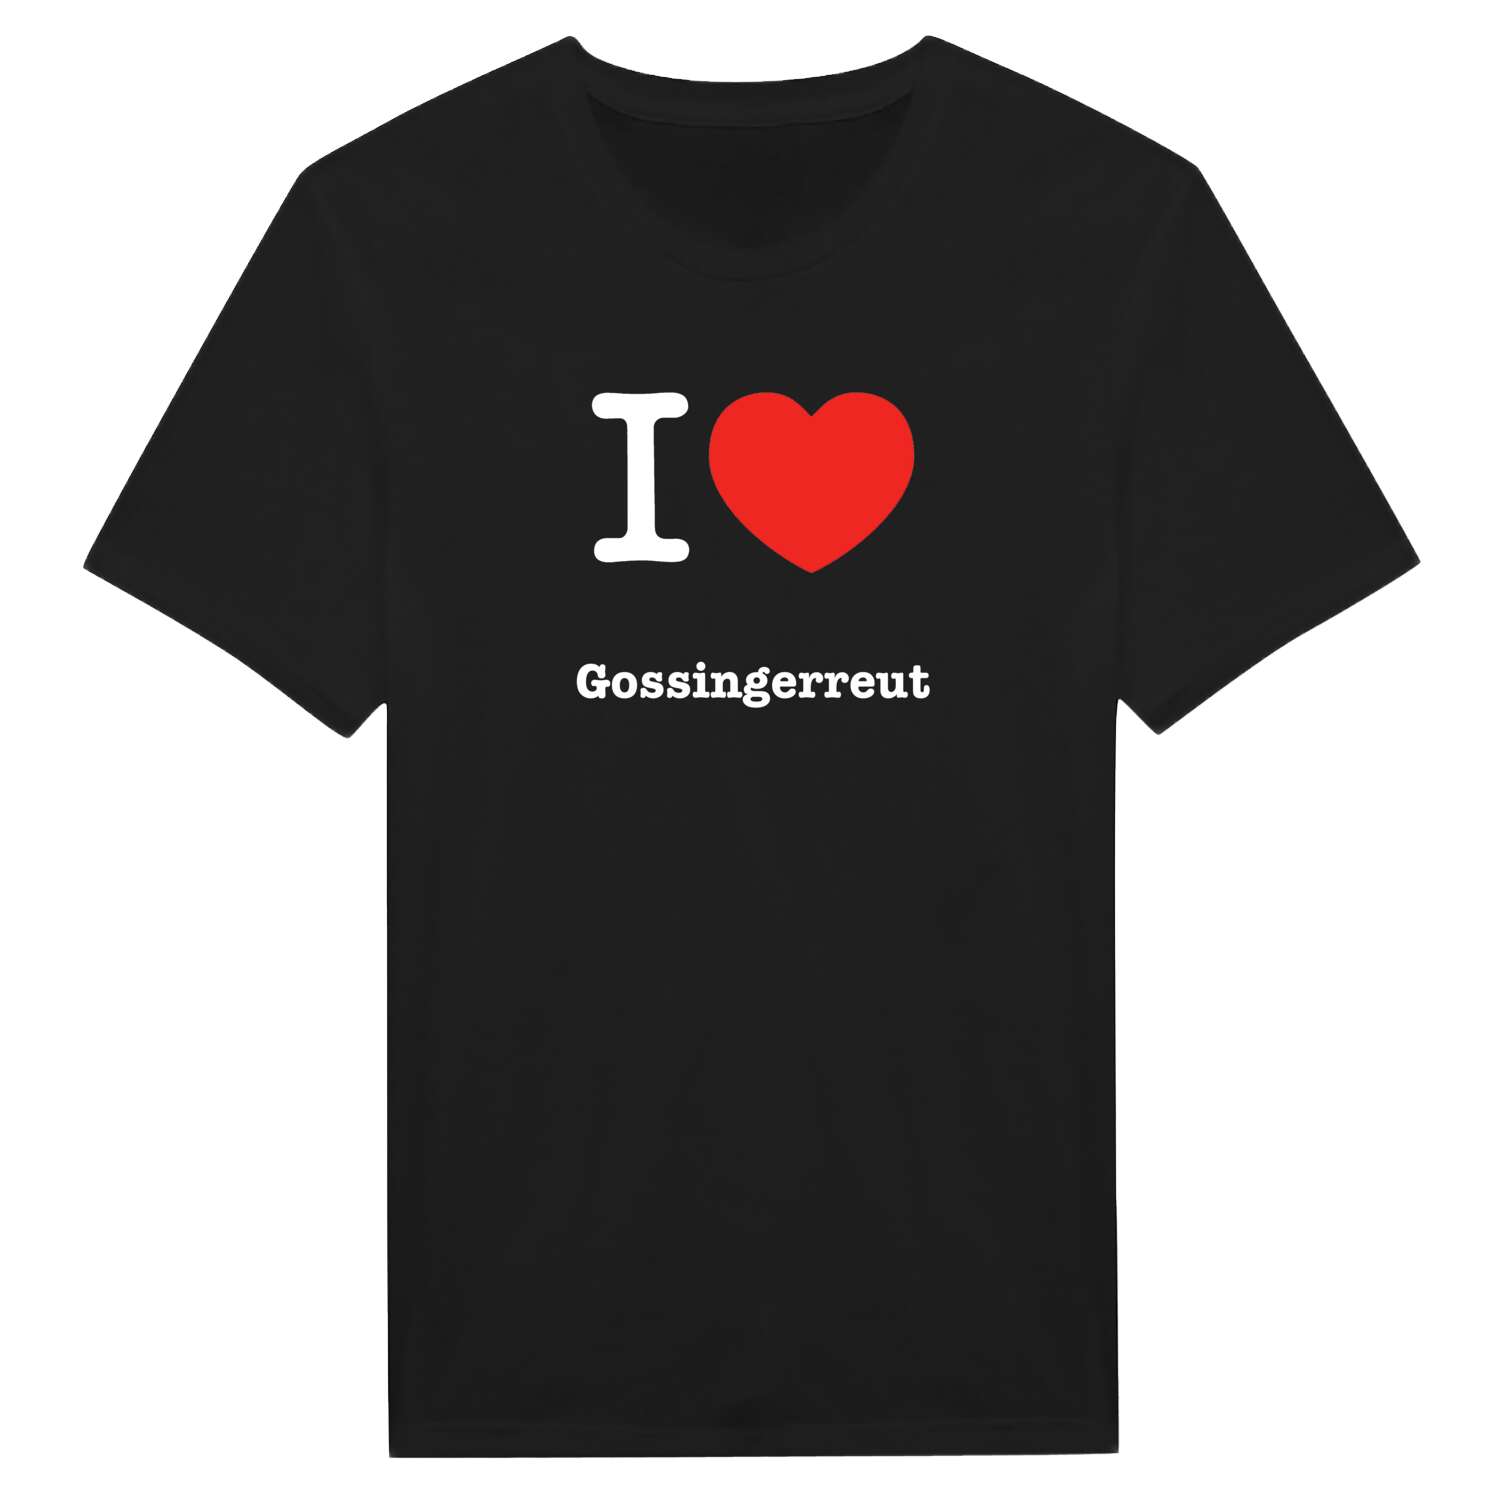 Gossingerreut T-Shirt »I love«